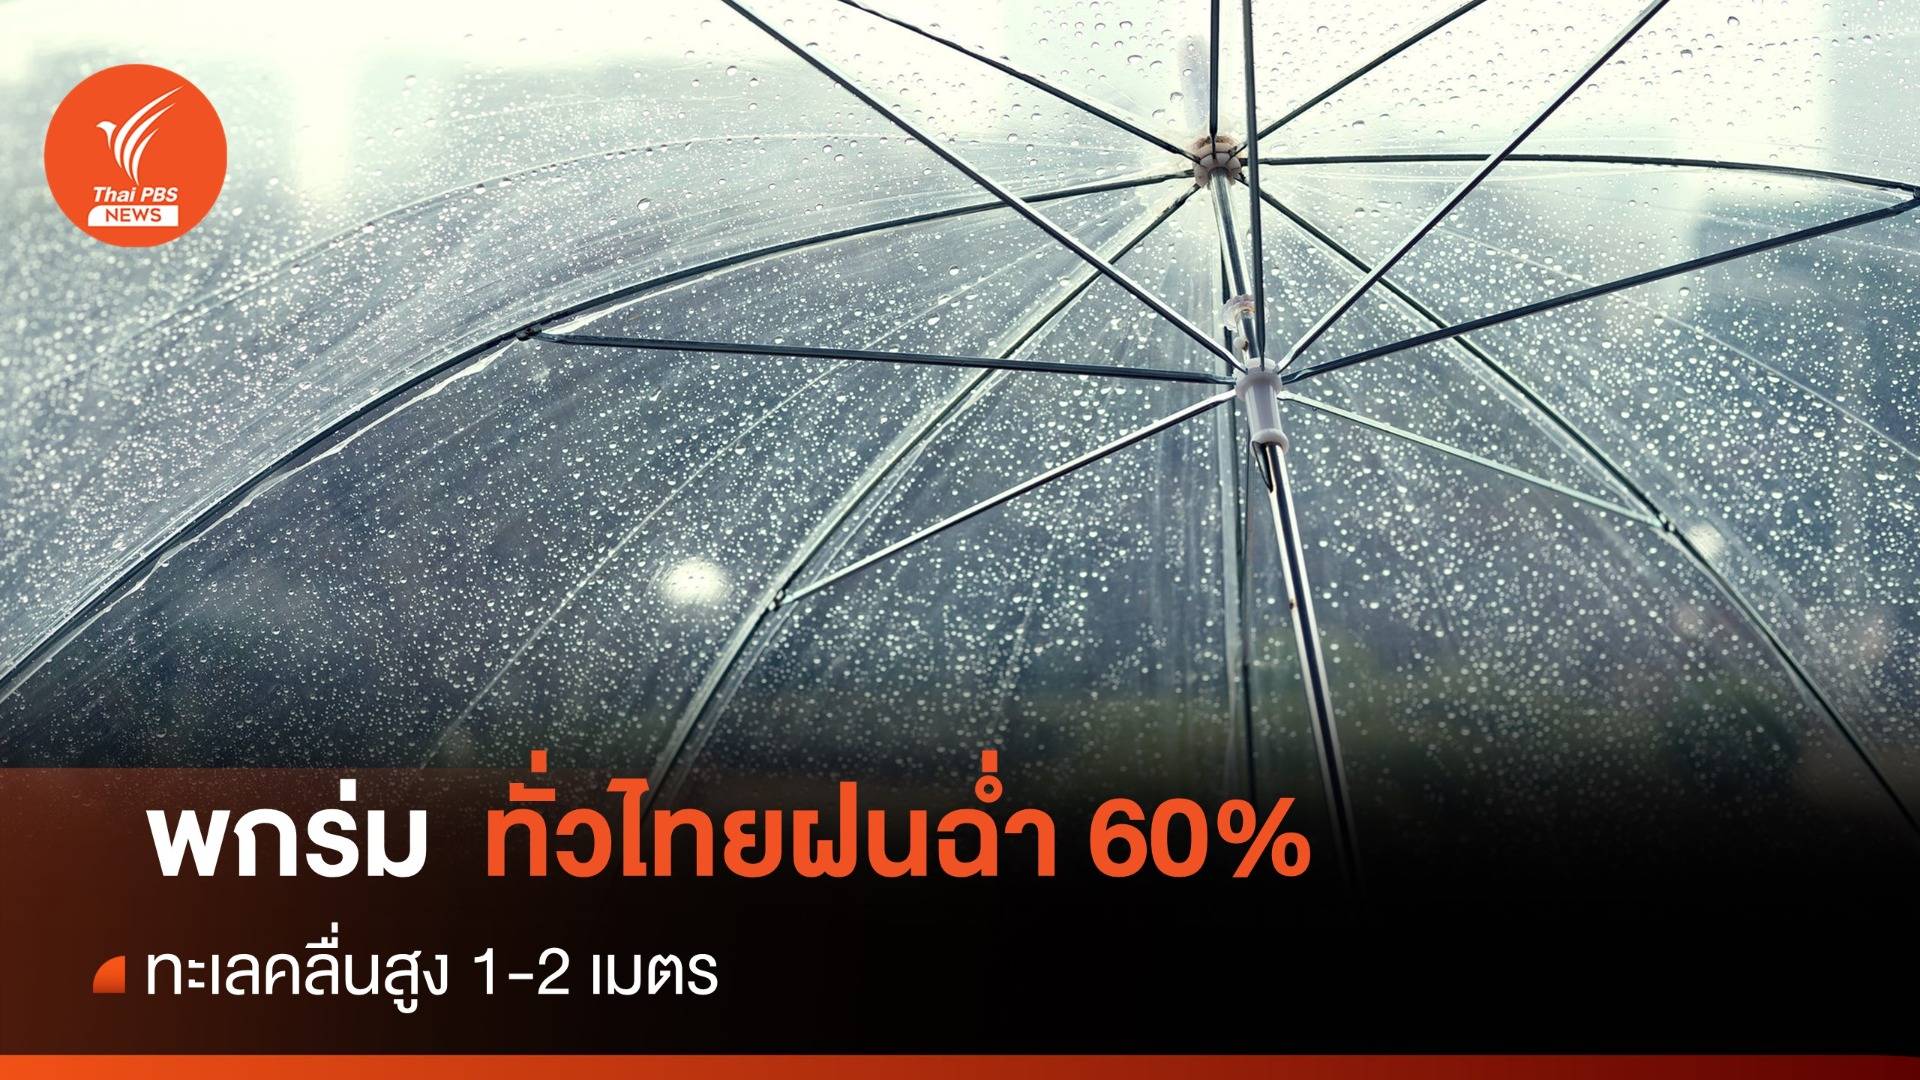 สภาพอากาศวันนี้ พกร่มด่วน เหนือ-ใต้-กทม.ฝนตก 60% ของพื้นที่